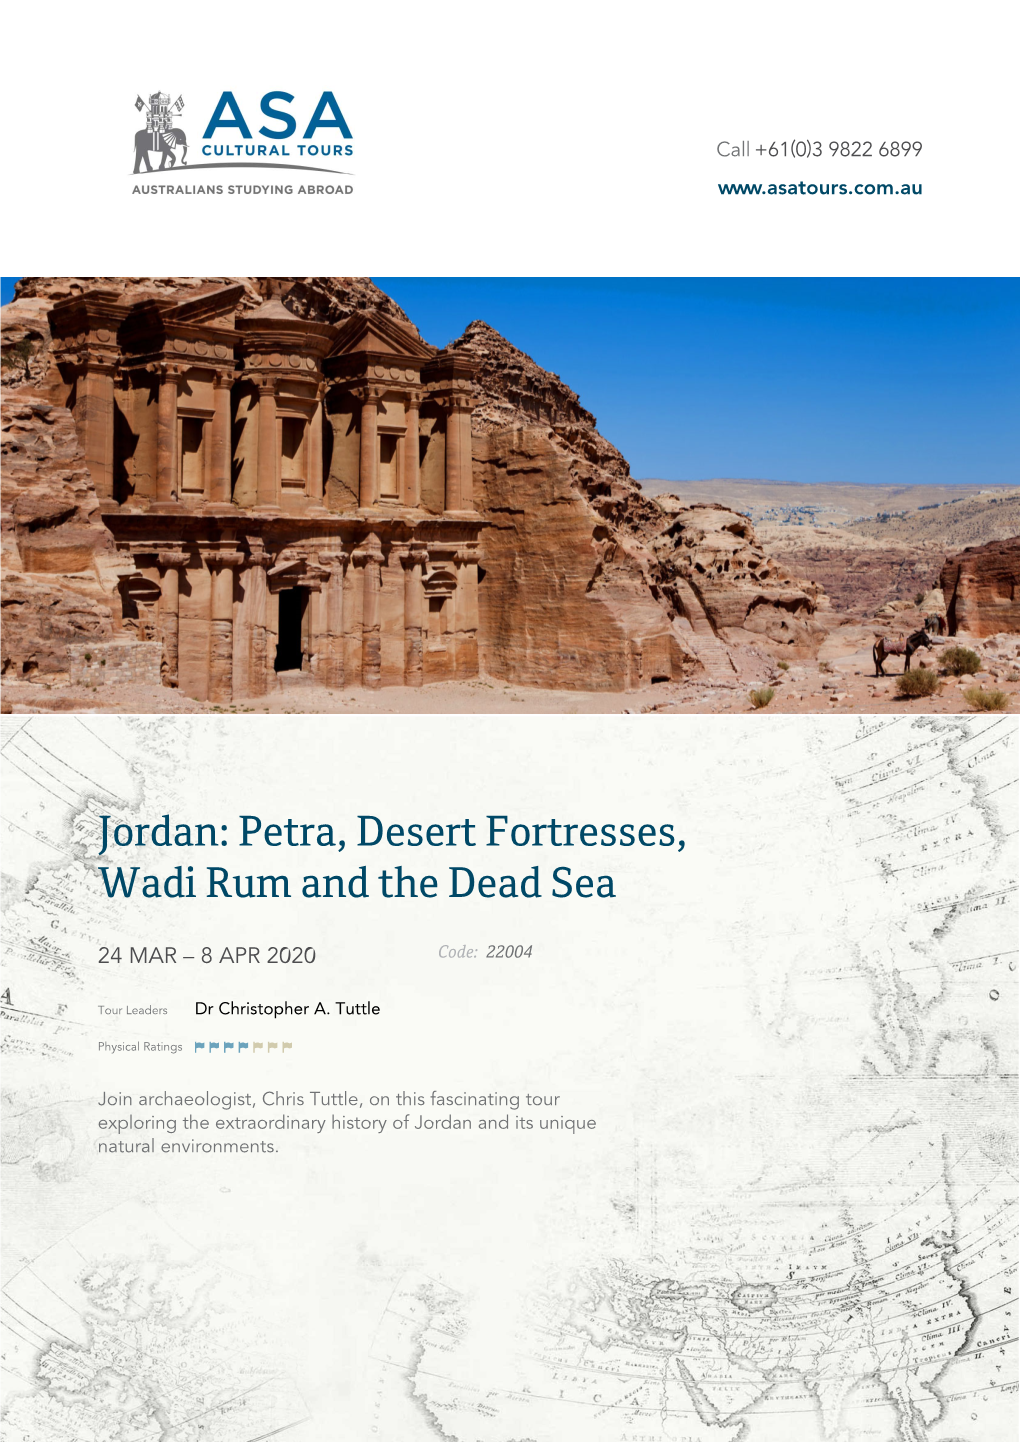 Jordan: Petra, Desert Fortresses, Wadi Rum and the Dead Sea